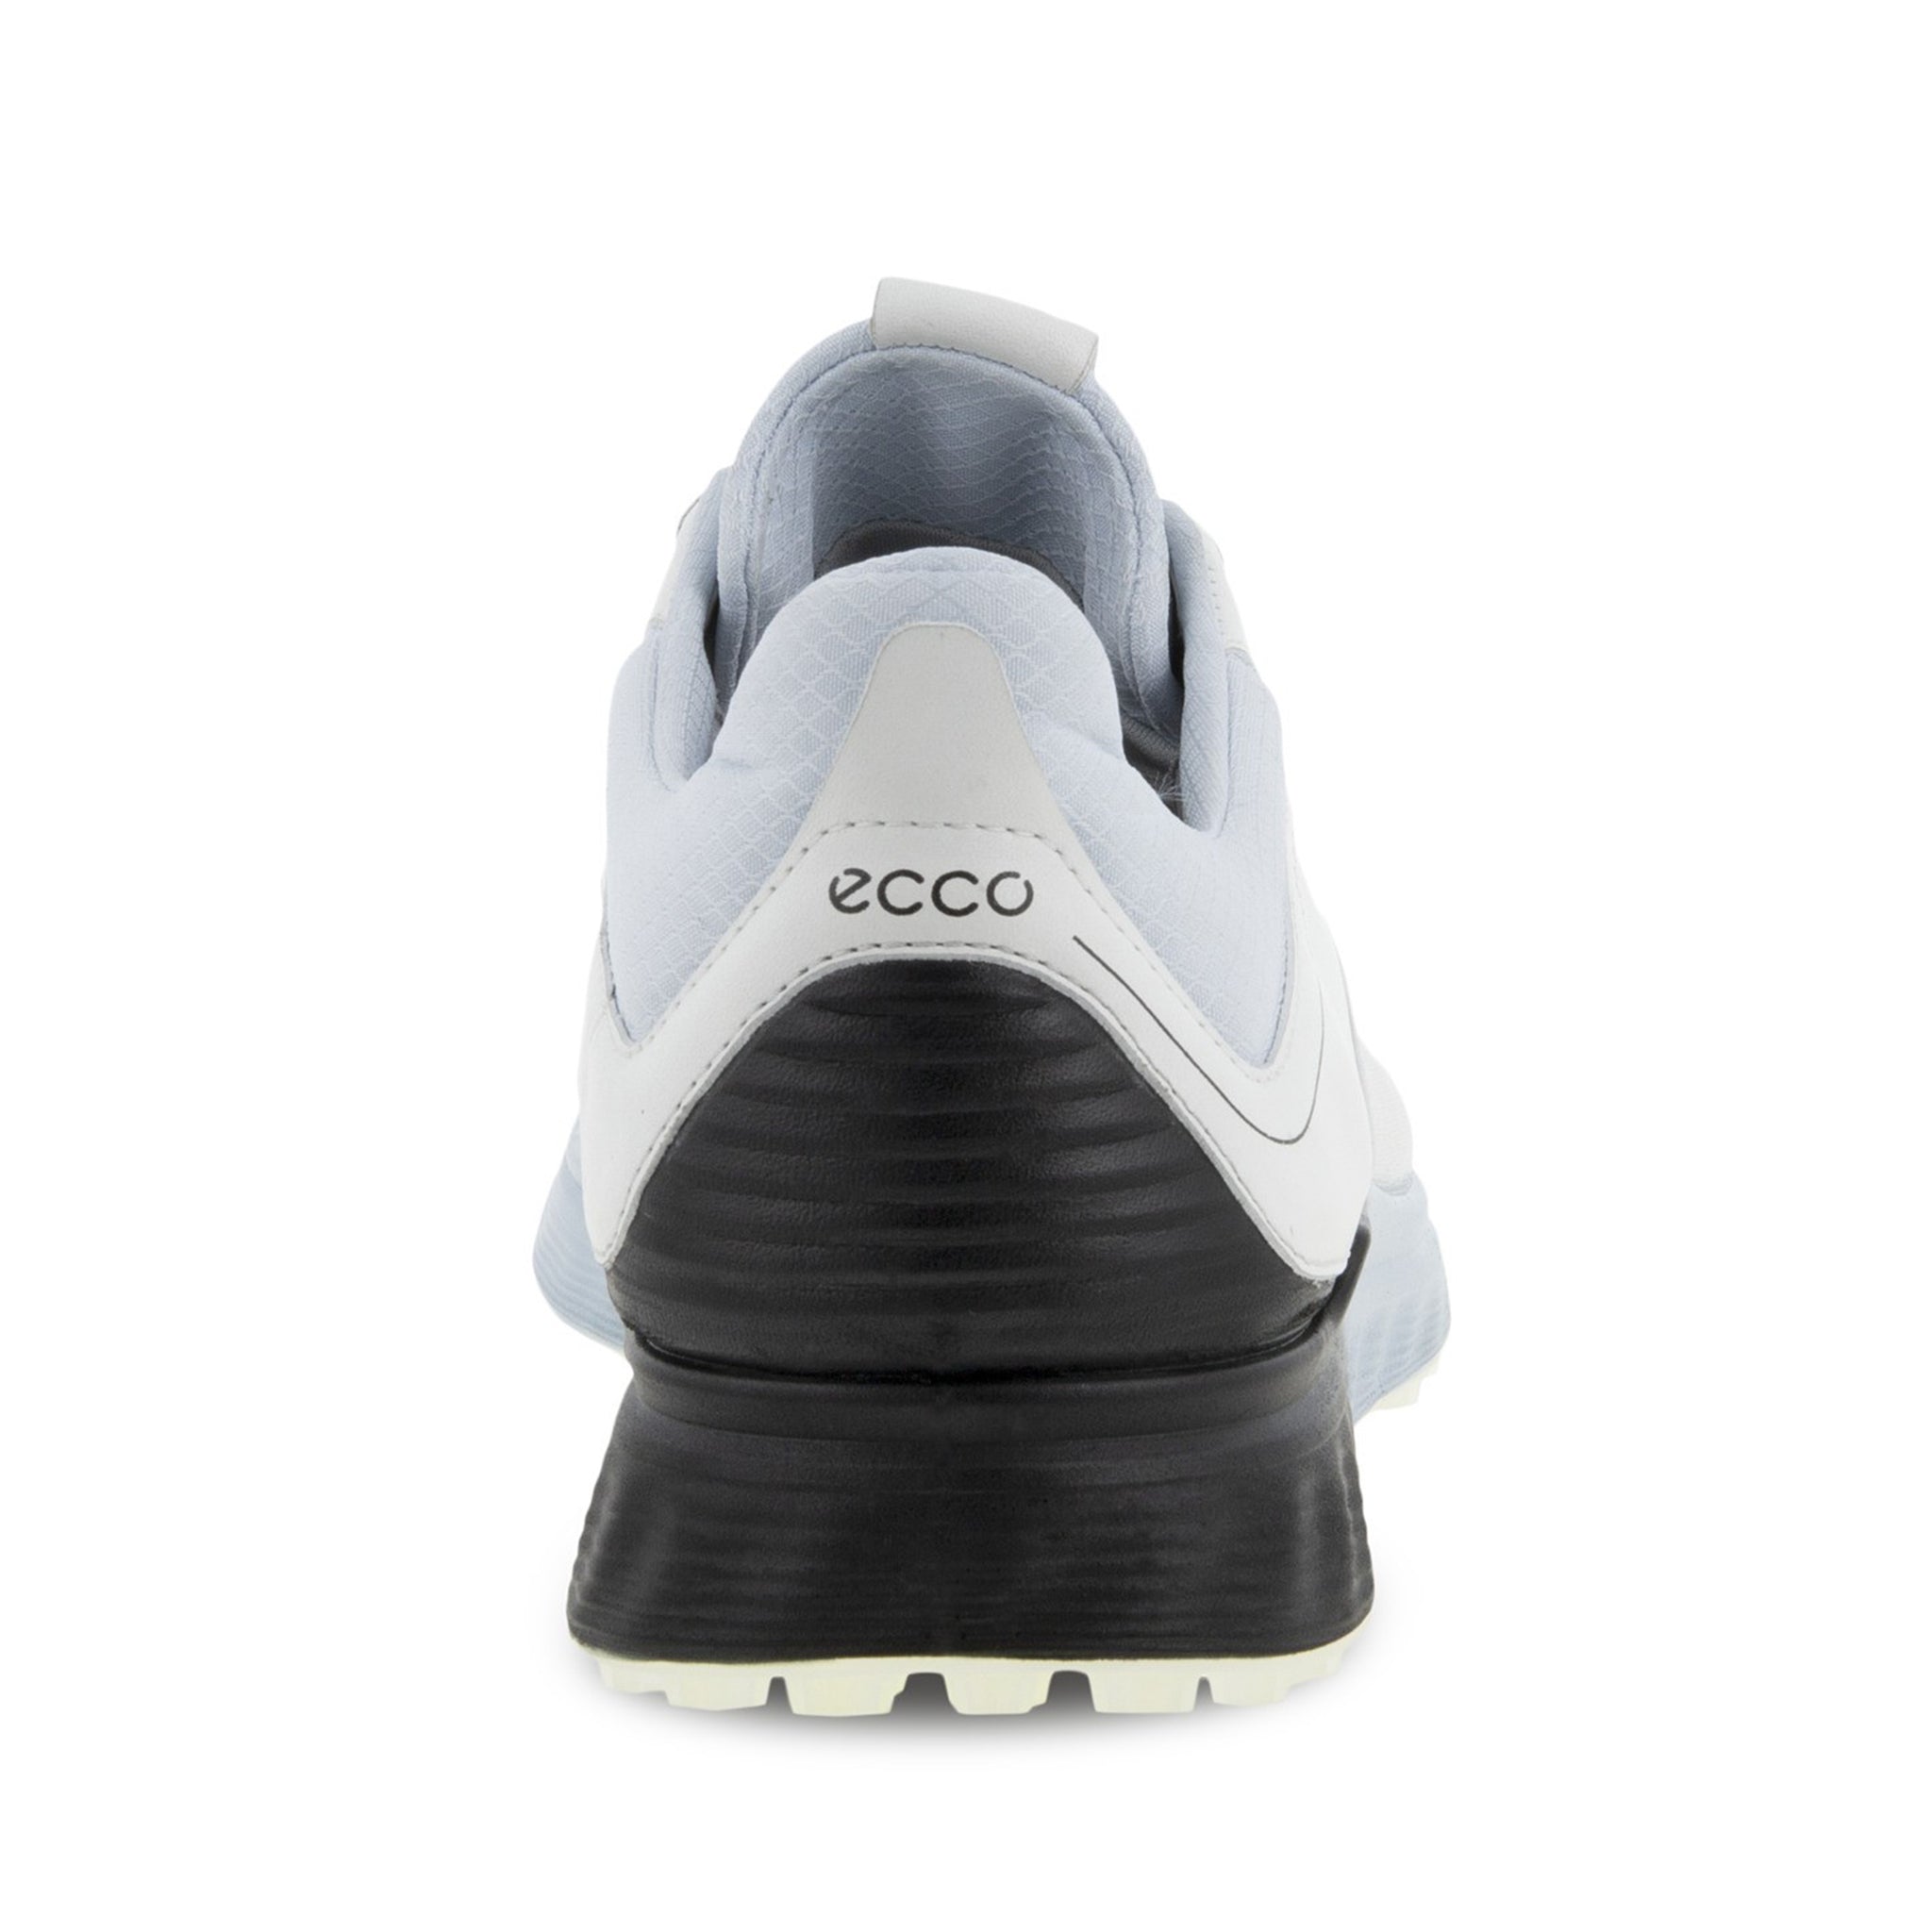 Ecco S-Three Gore-Tex Golf Shoes 102944 White Black Air 60613 & Function18